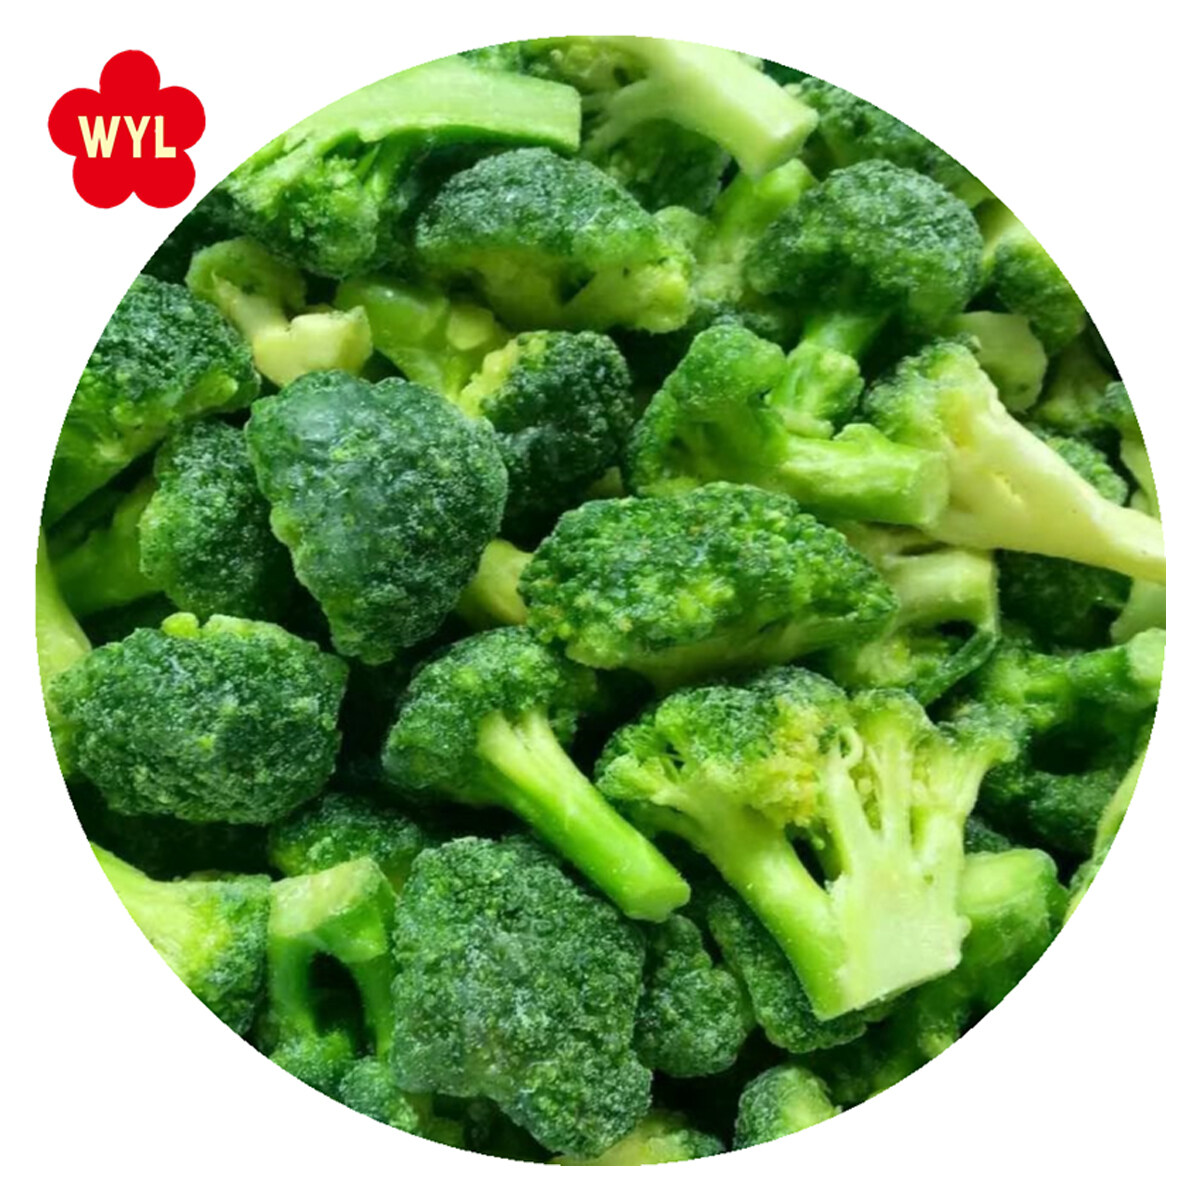 IQF Frisch gefrorener Brokkoli mit wettbewerbsfähigem gefrorenem grünen Brokkoli